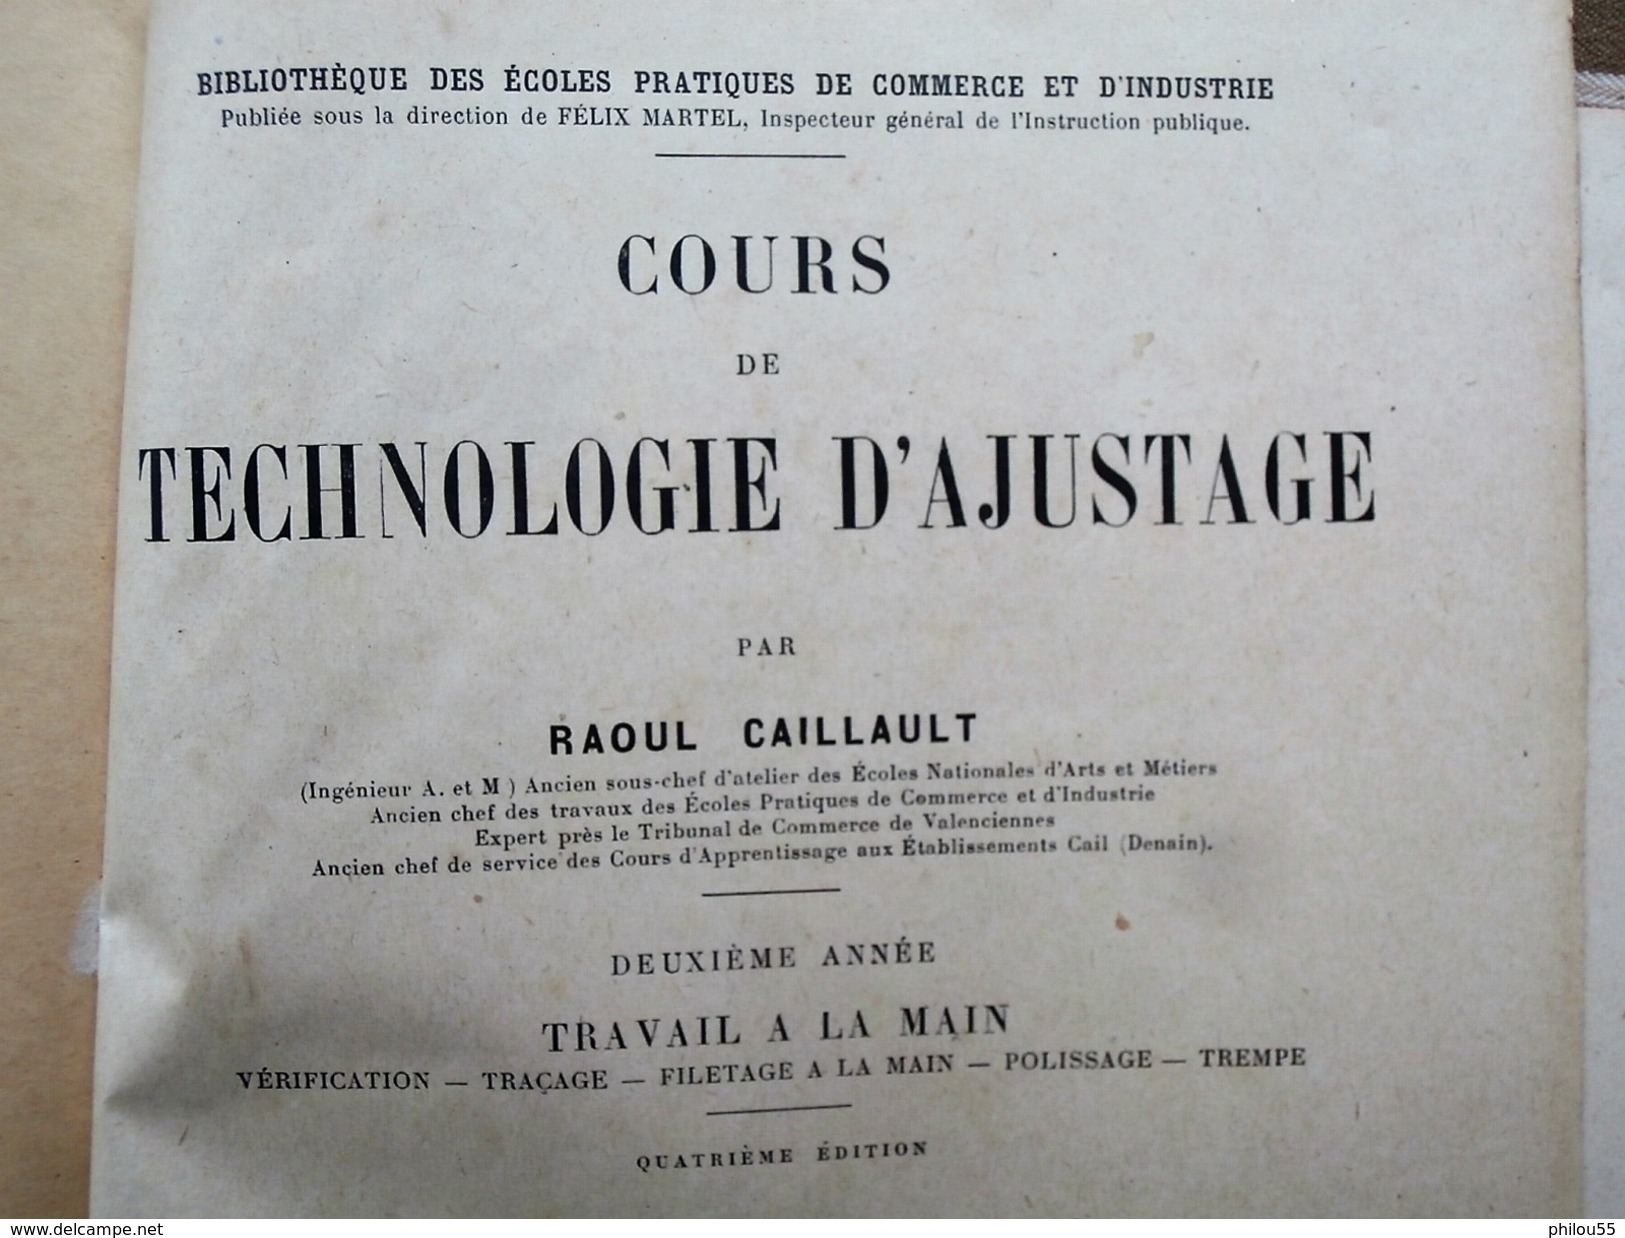 Technologie d'Ajustage Travail a la Main R. CAILLAUD Delagrave 1920